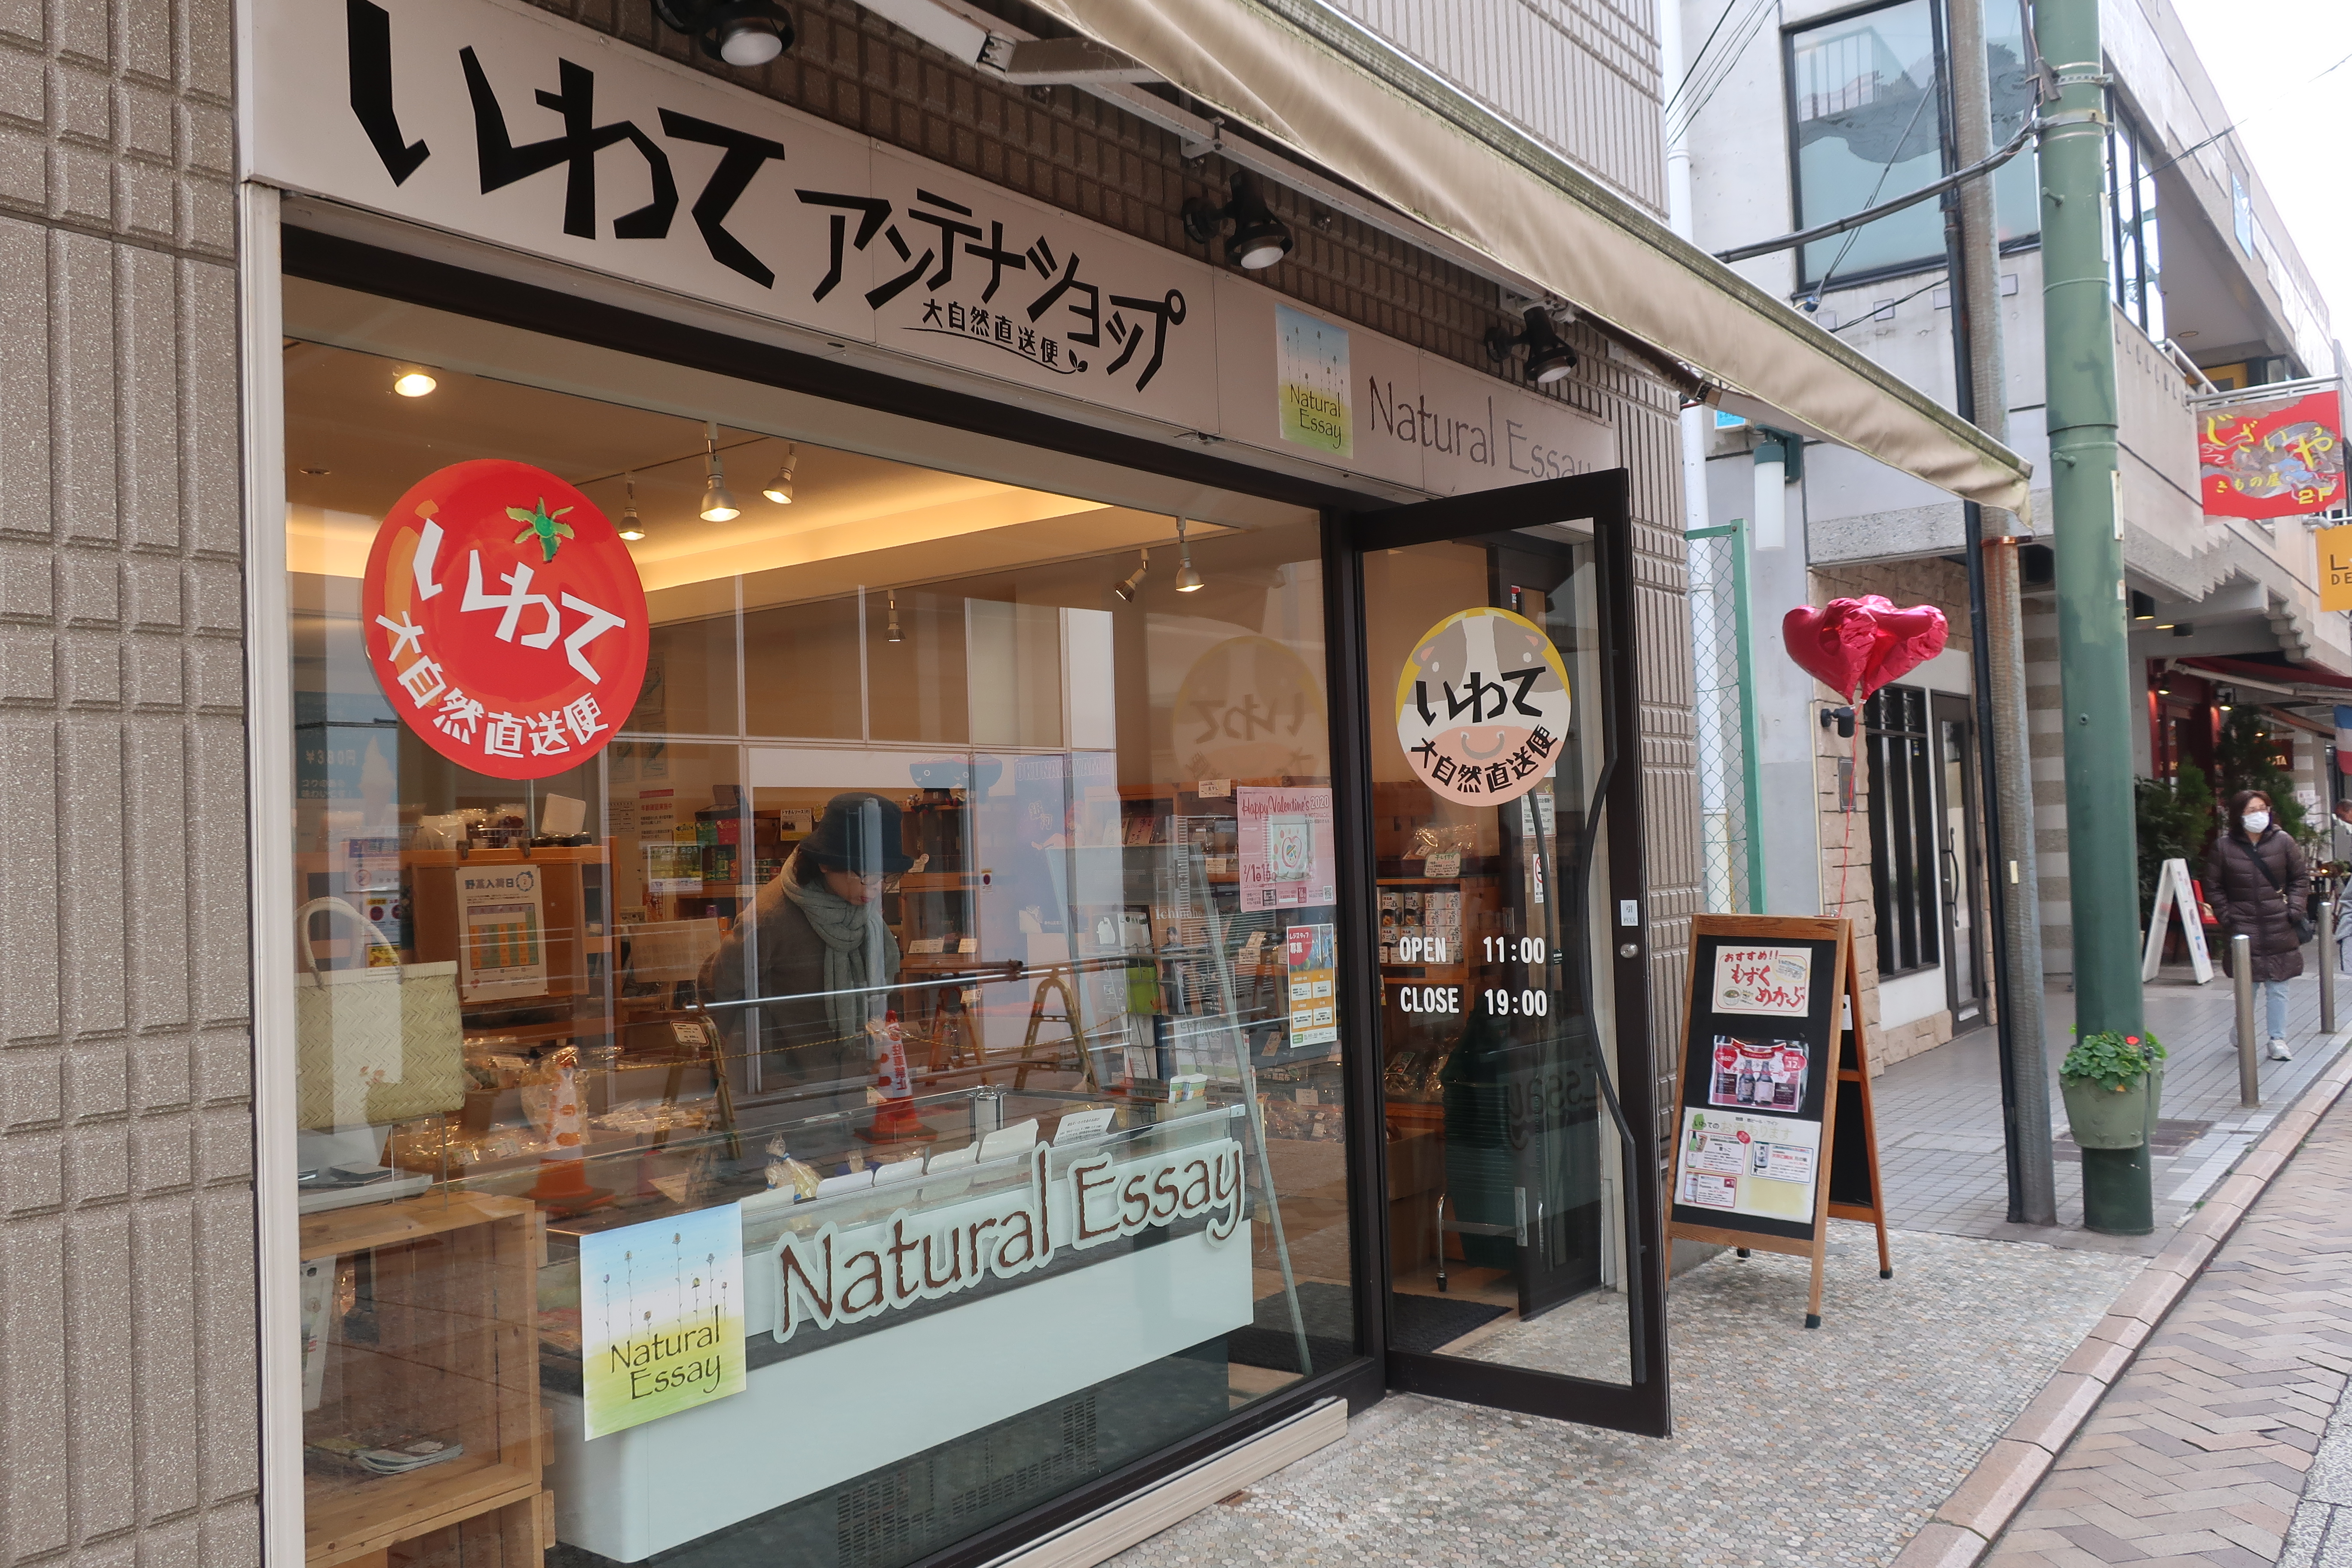 横浜元町のNatural Essay様の店頭にフレンチせんべい‼